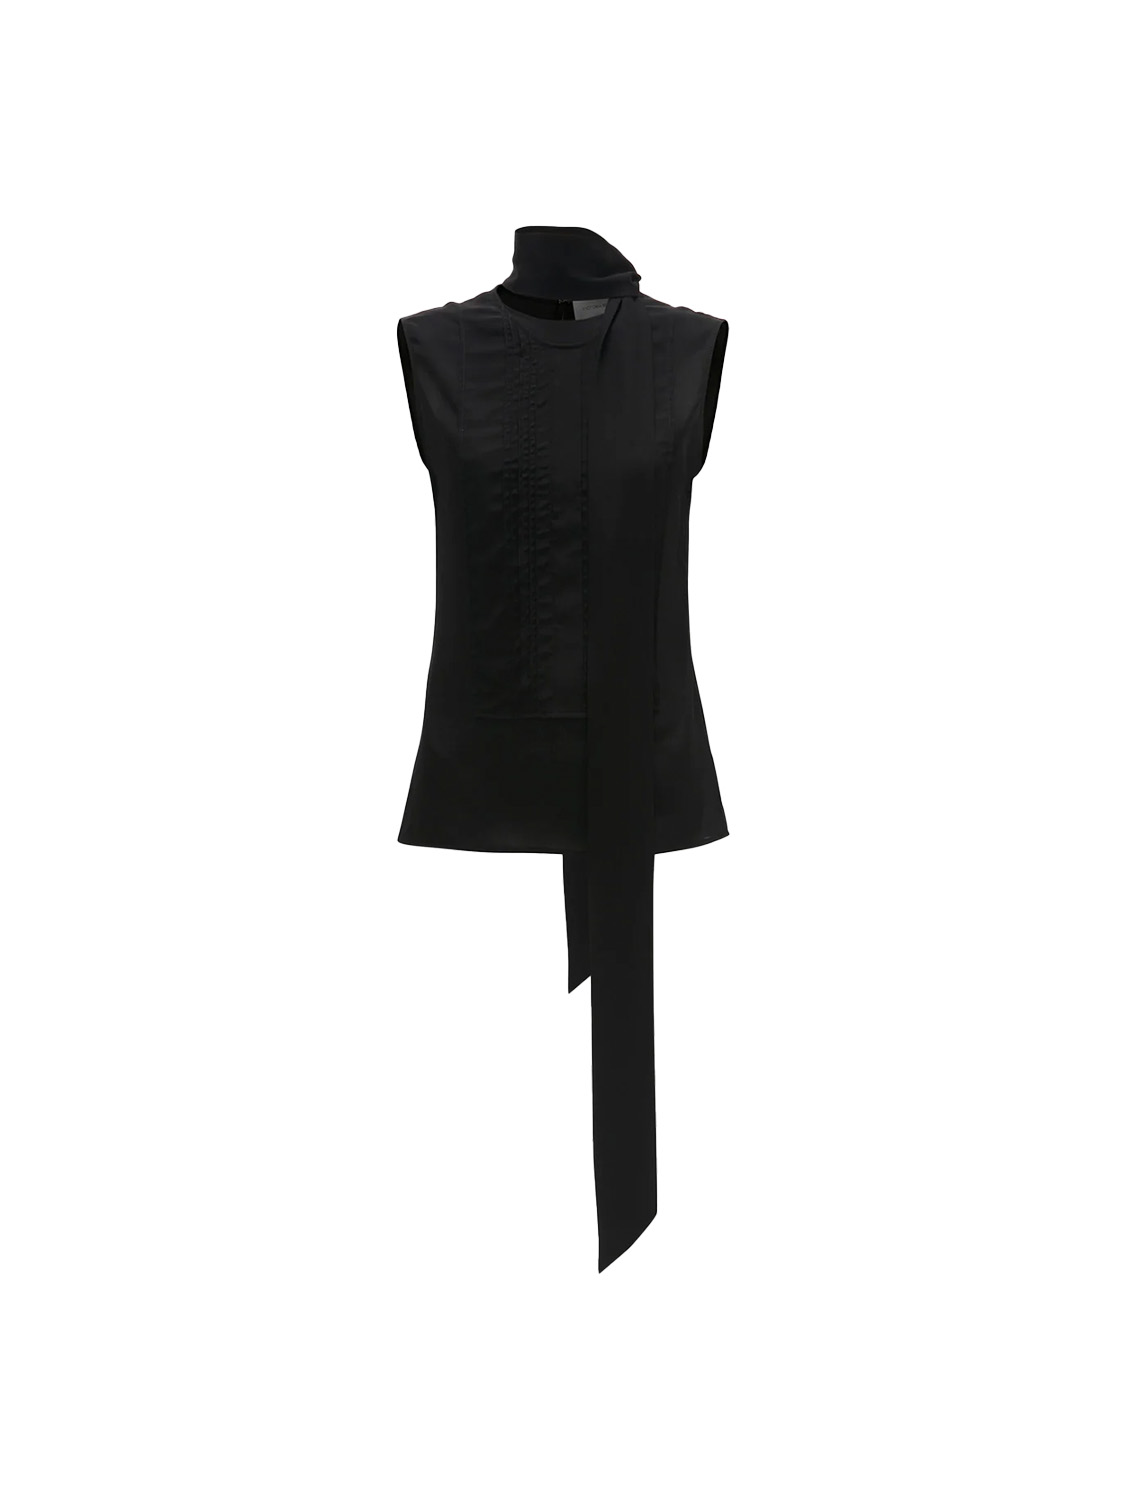 Victoria Beckham Camicetta in crêpe di seta con scollo a cravatta   nero 34